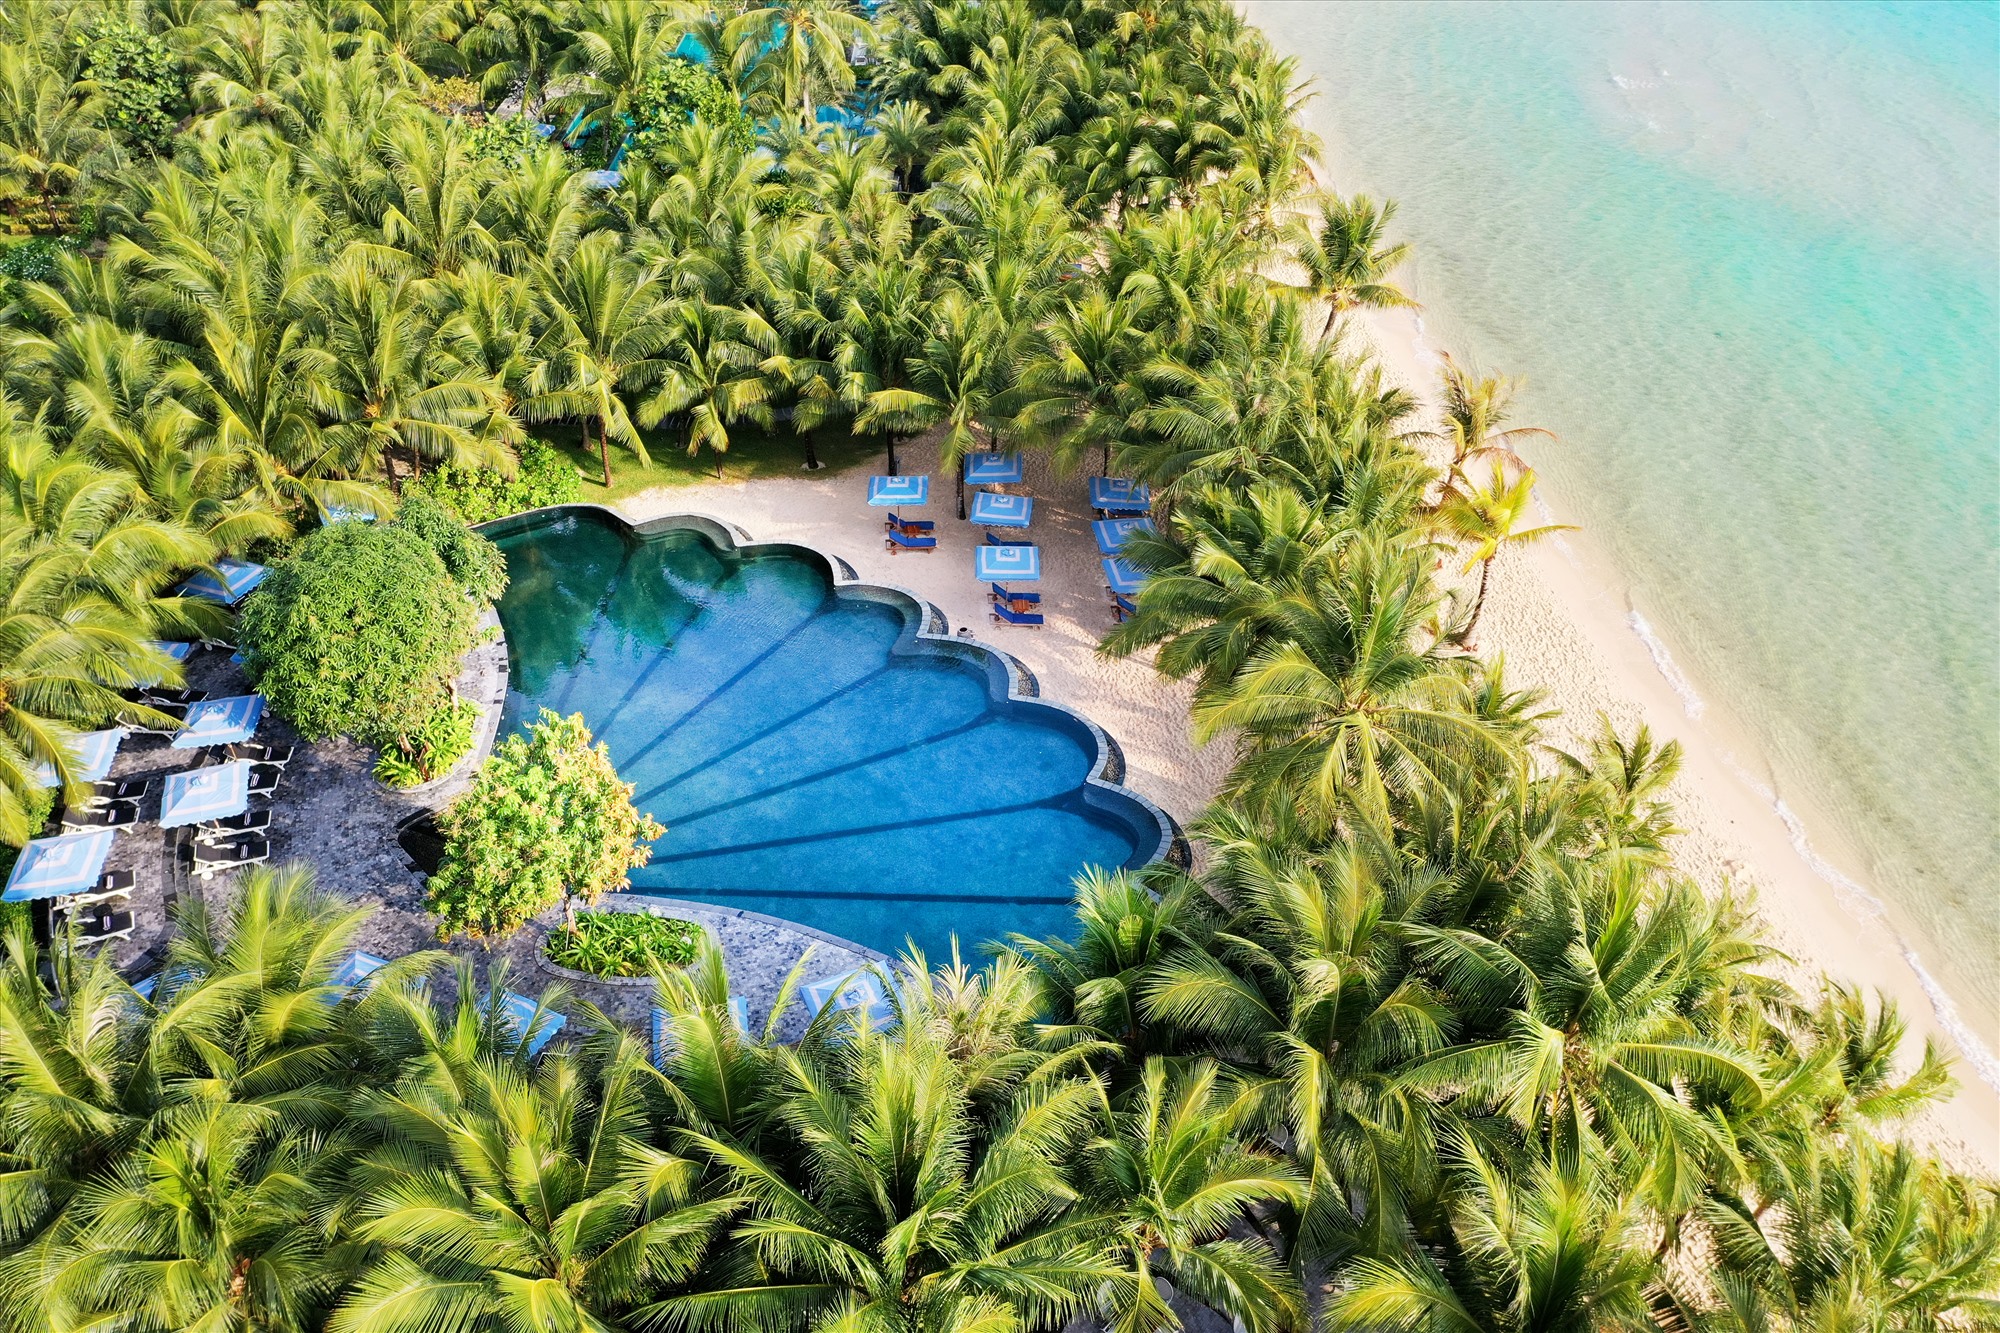 Bể bơi của JW Marriott Phu Quoc Emerald Bay Resort nổi bật giữa khung cảnh của Bãi Kem. Ảnh: Hà 